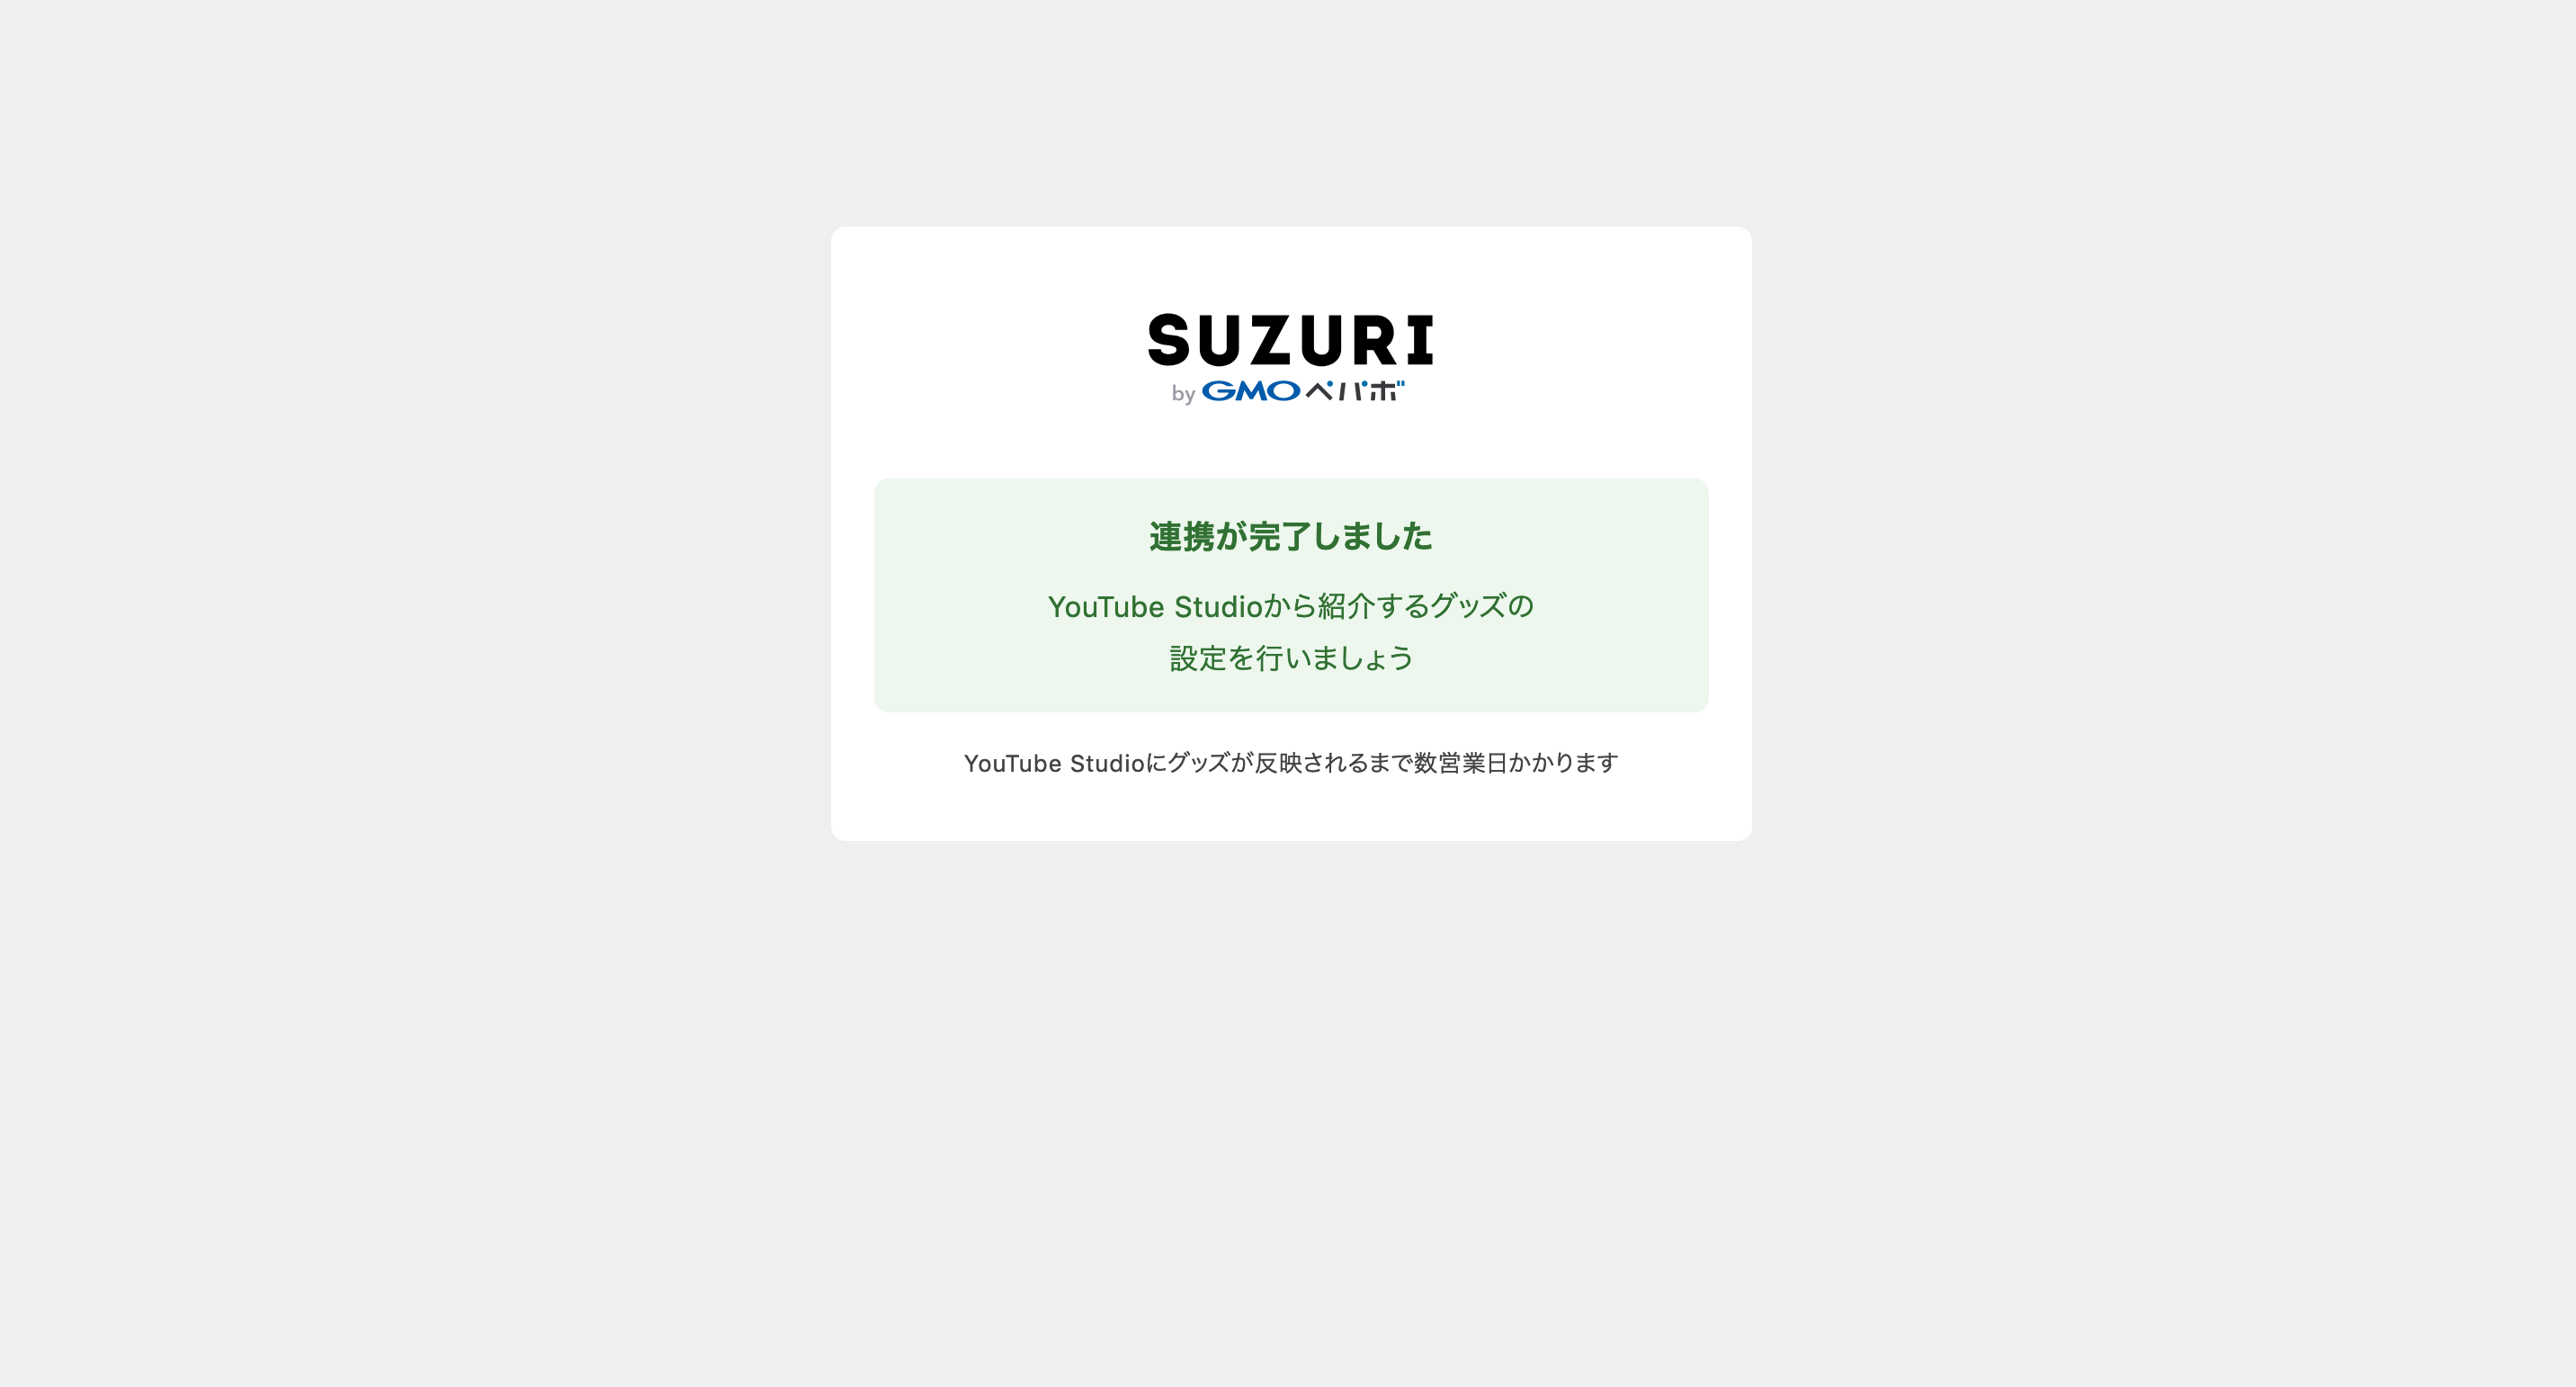 忍者スリスリくん Surisurikun の Youtubeでグッズを紹介できる機能に対応しマシた というジャーナル Suzuri スズリ